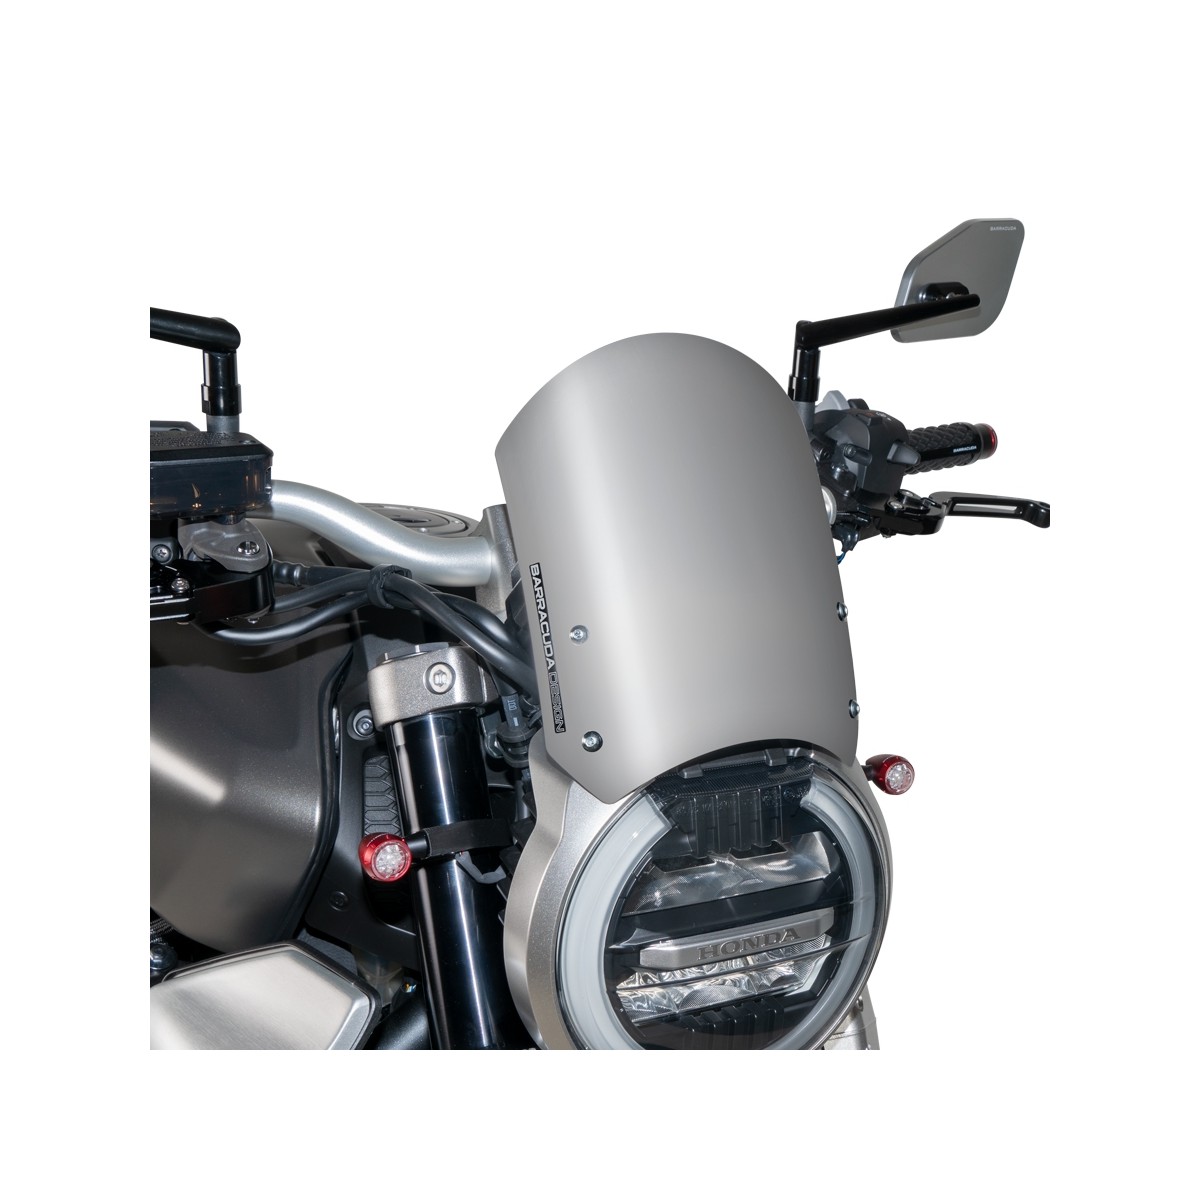 DPM Race R-0670 - 100% Made in Italy - Parabrezza in Alluminio Facile Installazione Accessori De Pretto Moto CB1000R 2008/16 Minuteria Inclusa Cupolino Warrior 